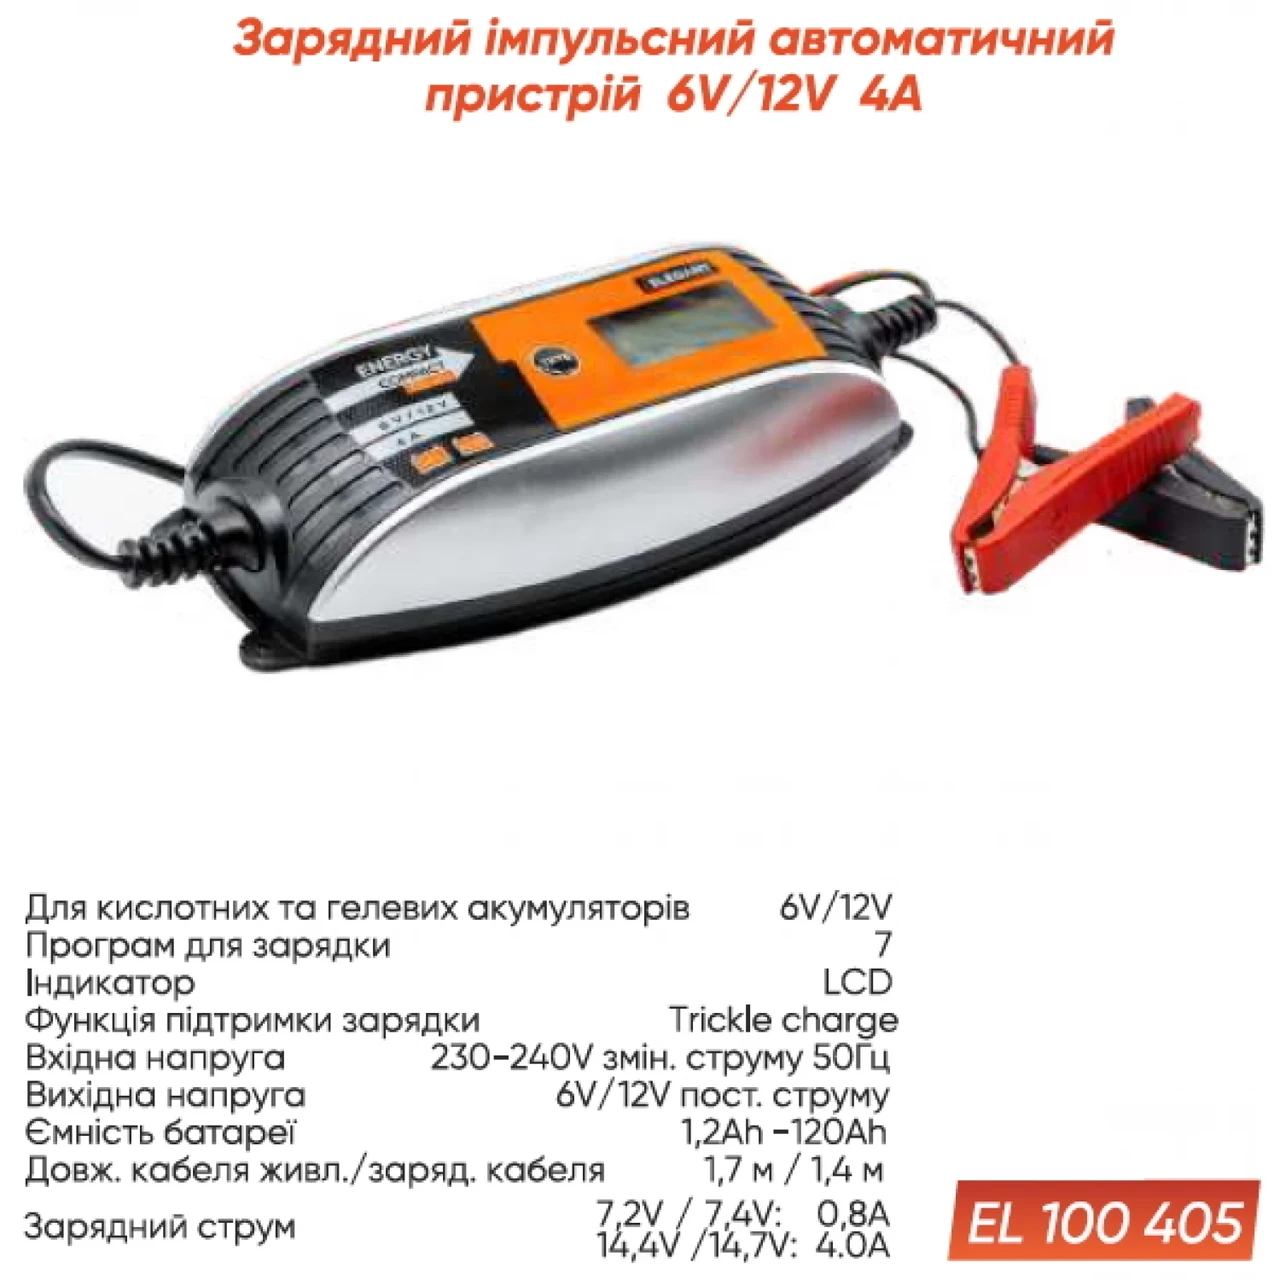 Зарядний пристрій автоматичний 6V/12V 4A Elegant (EL 100 405)